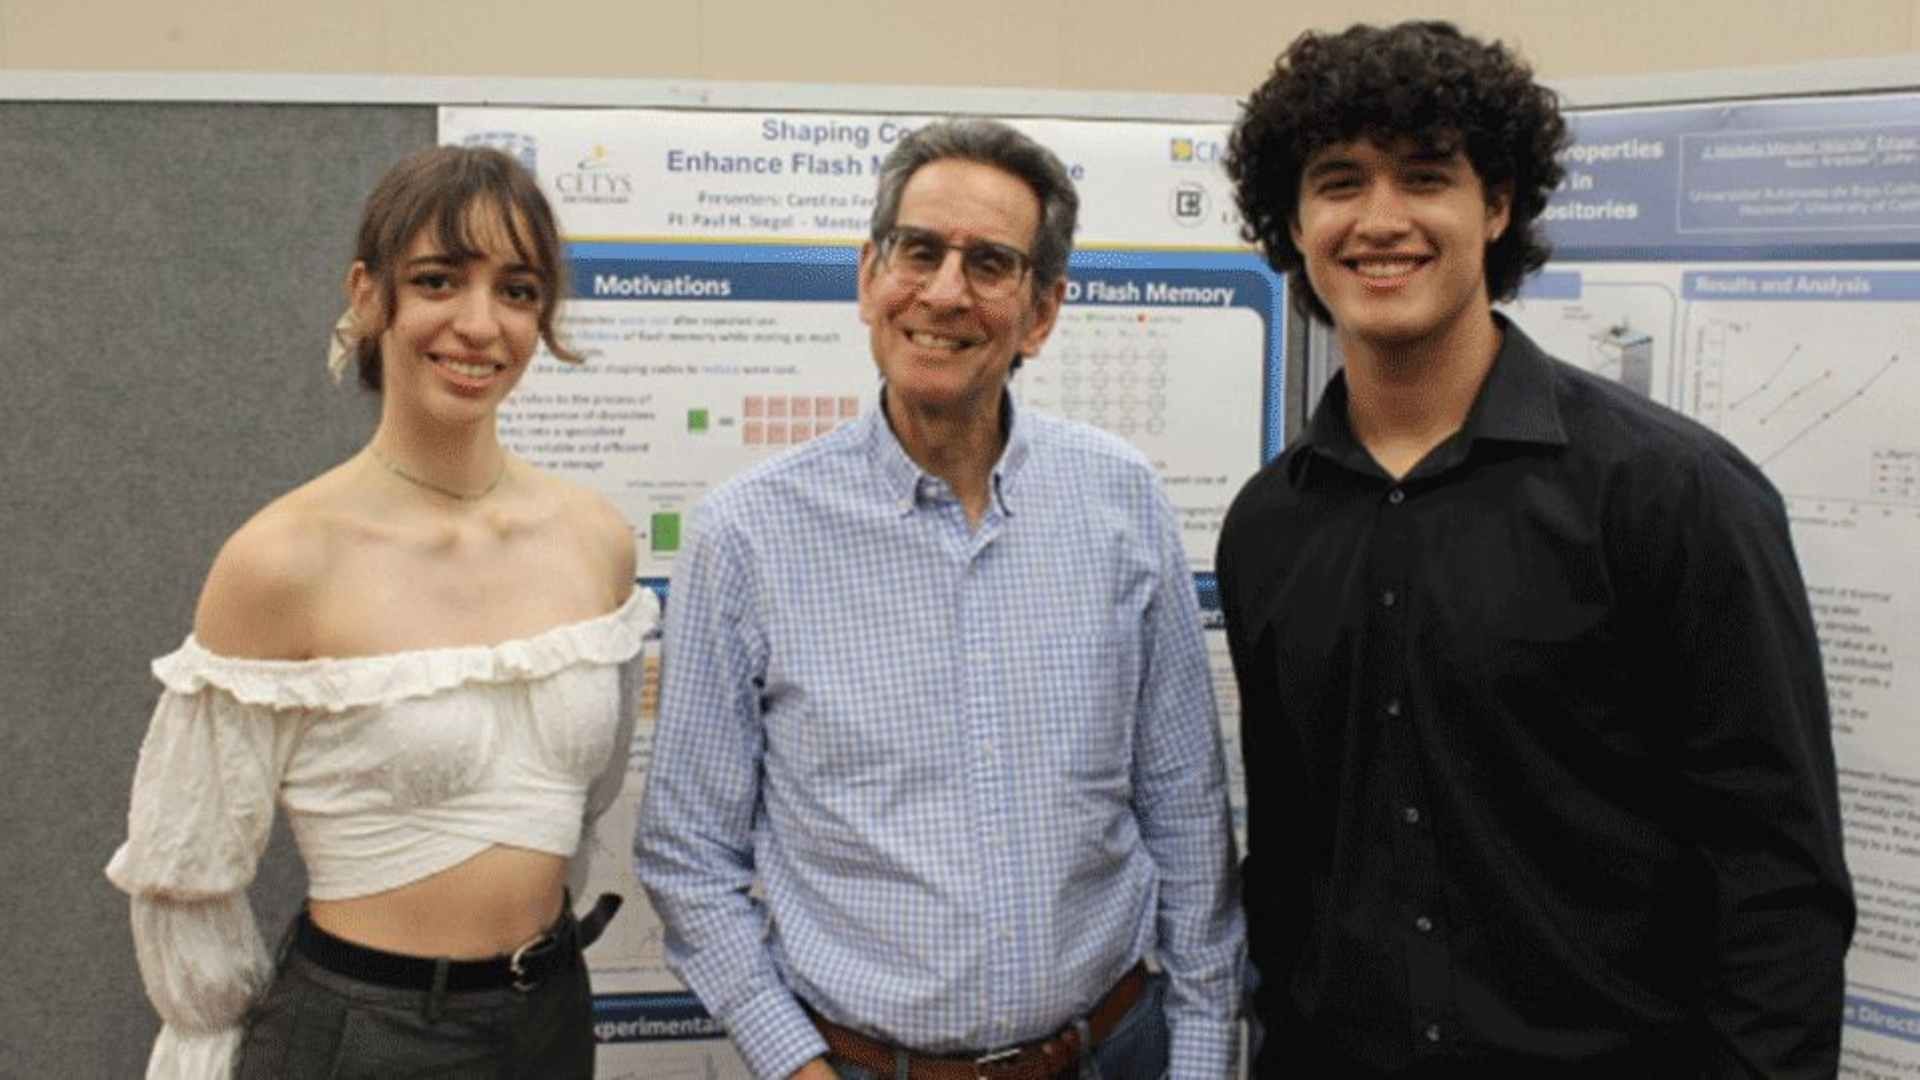 Estudiantes trabajaron en investigaciones en universidad de San Diego